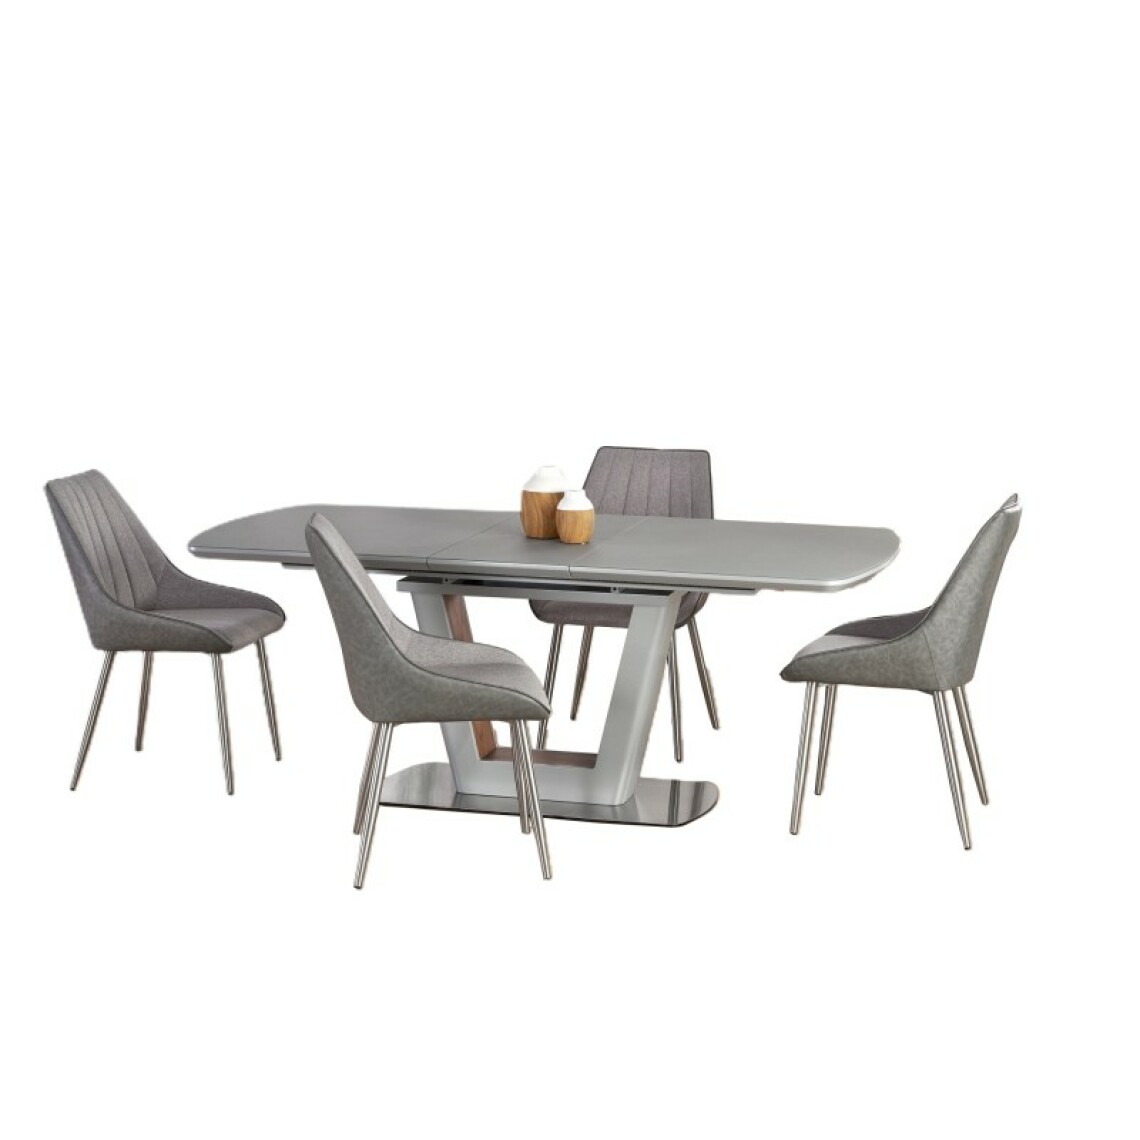 Carellia - Table à manger design extensible BILOTTI 160-200 cm x 90 cm x 76 cm - Gris clair - Tables à manger